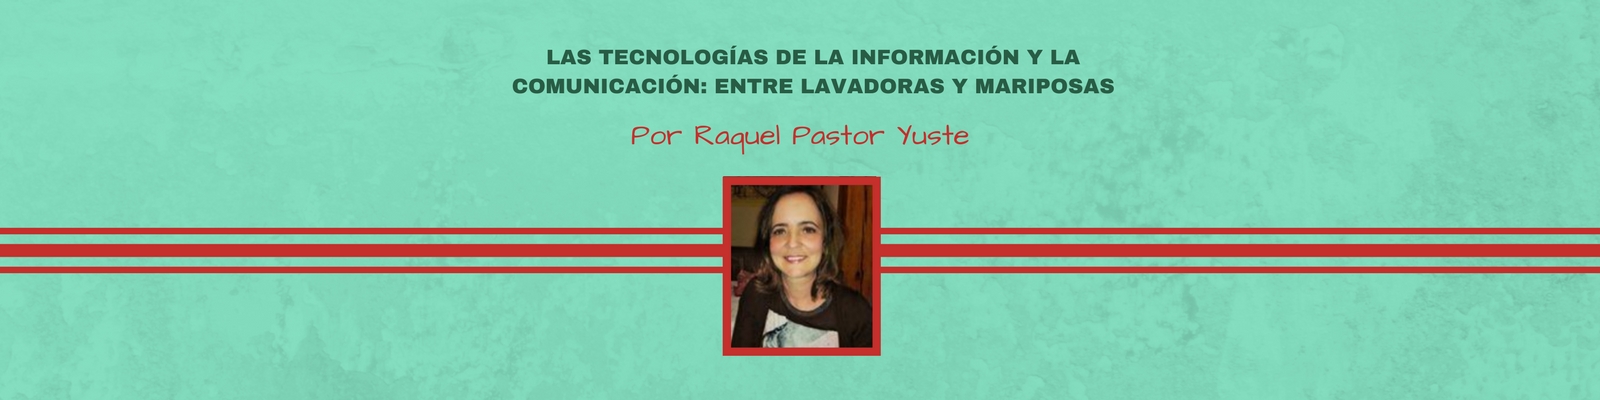 Las Tecnologías de la información y la comunicación:  Entre lavadoras y mariposas. Por Raquel Pastor Yuste.